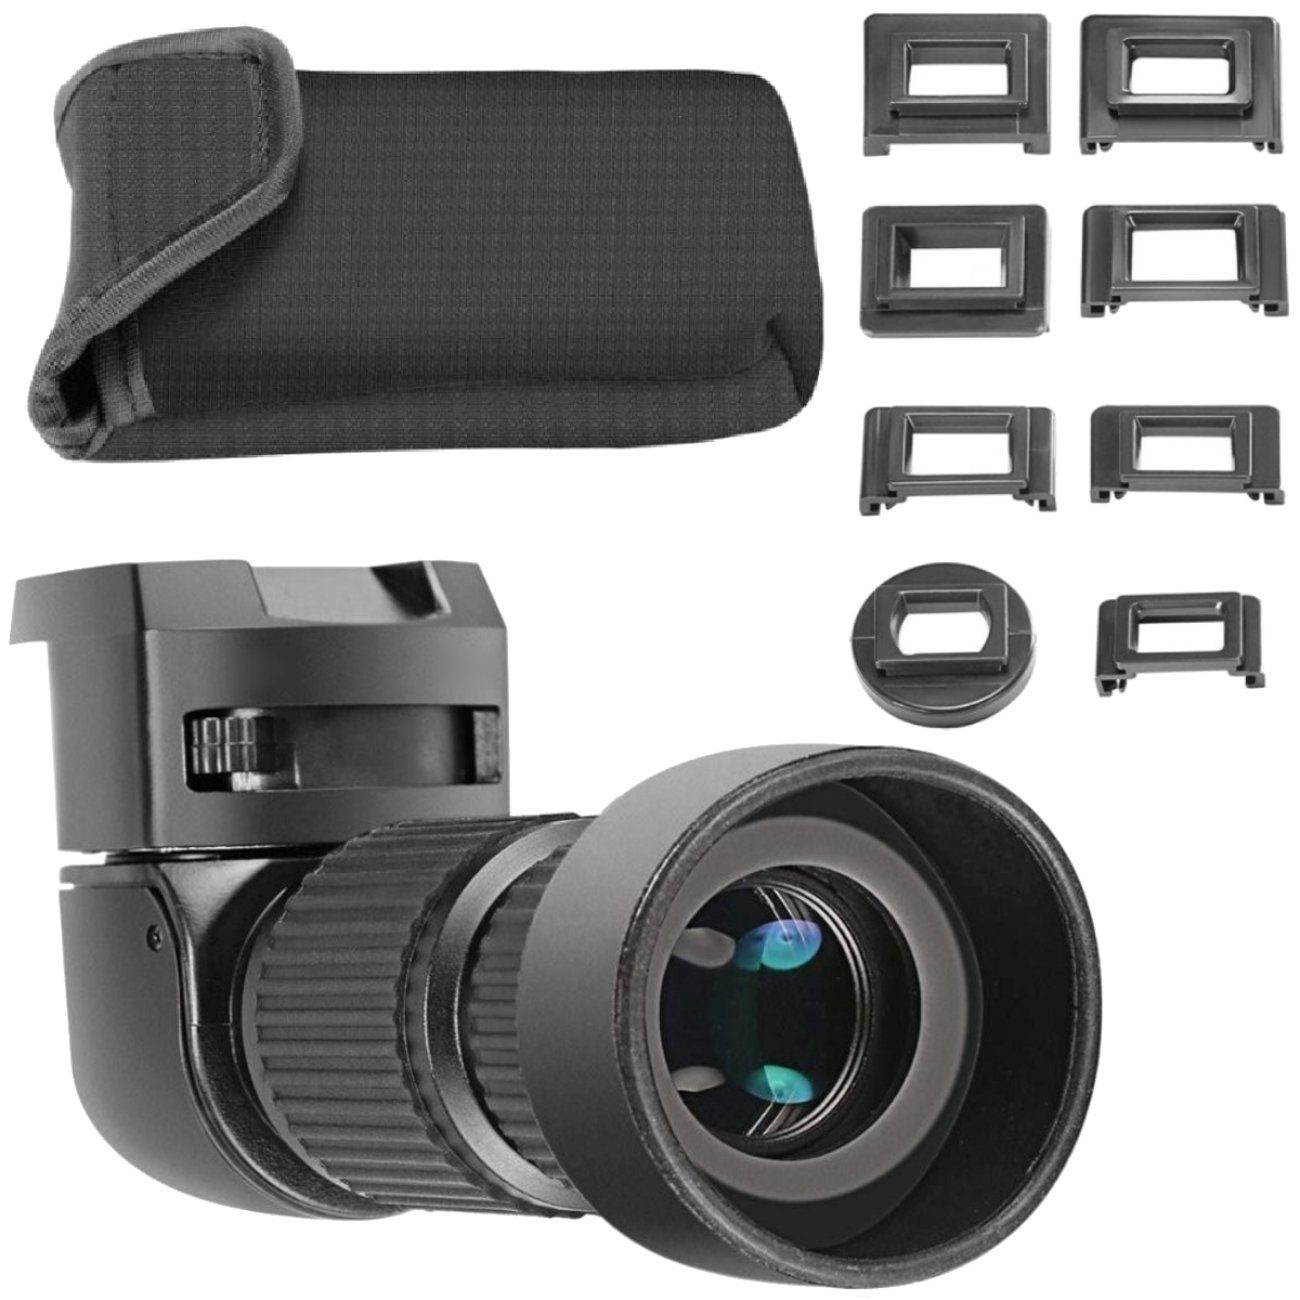 Impulsfoto Aufstecksucher Winkelsucher Viewfinder 1,0 - 2,5-fach für DSLR Kameras